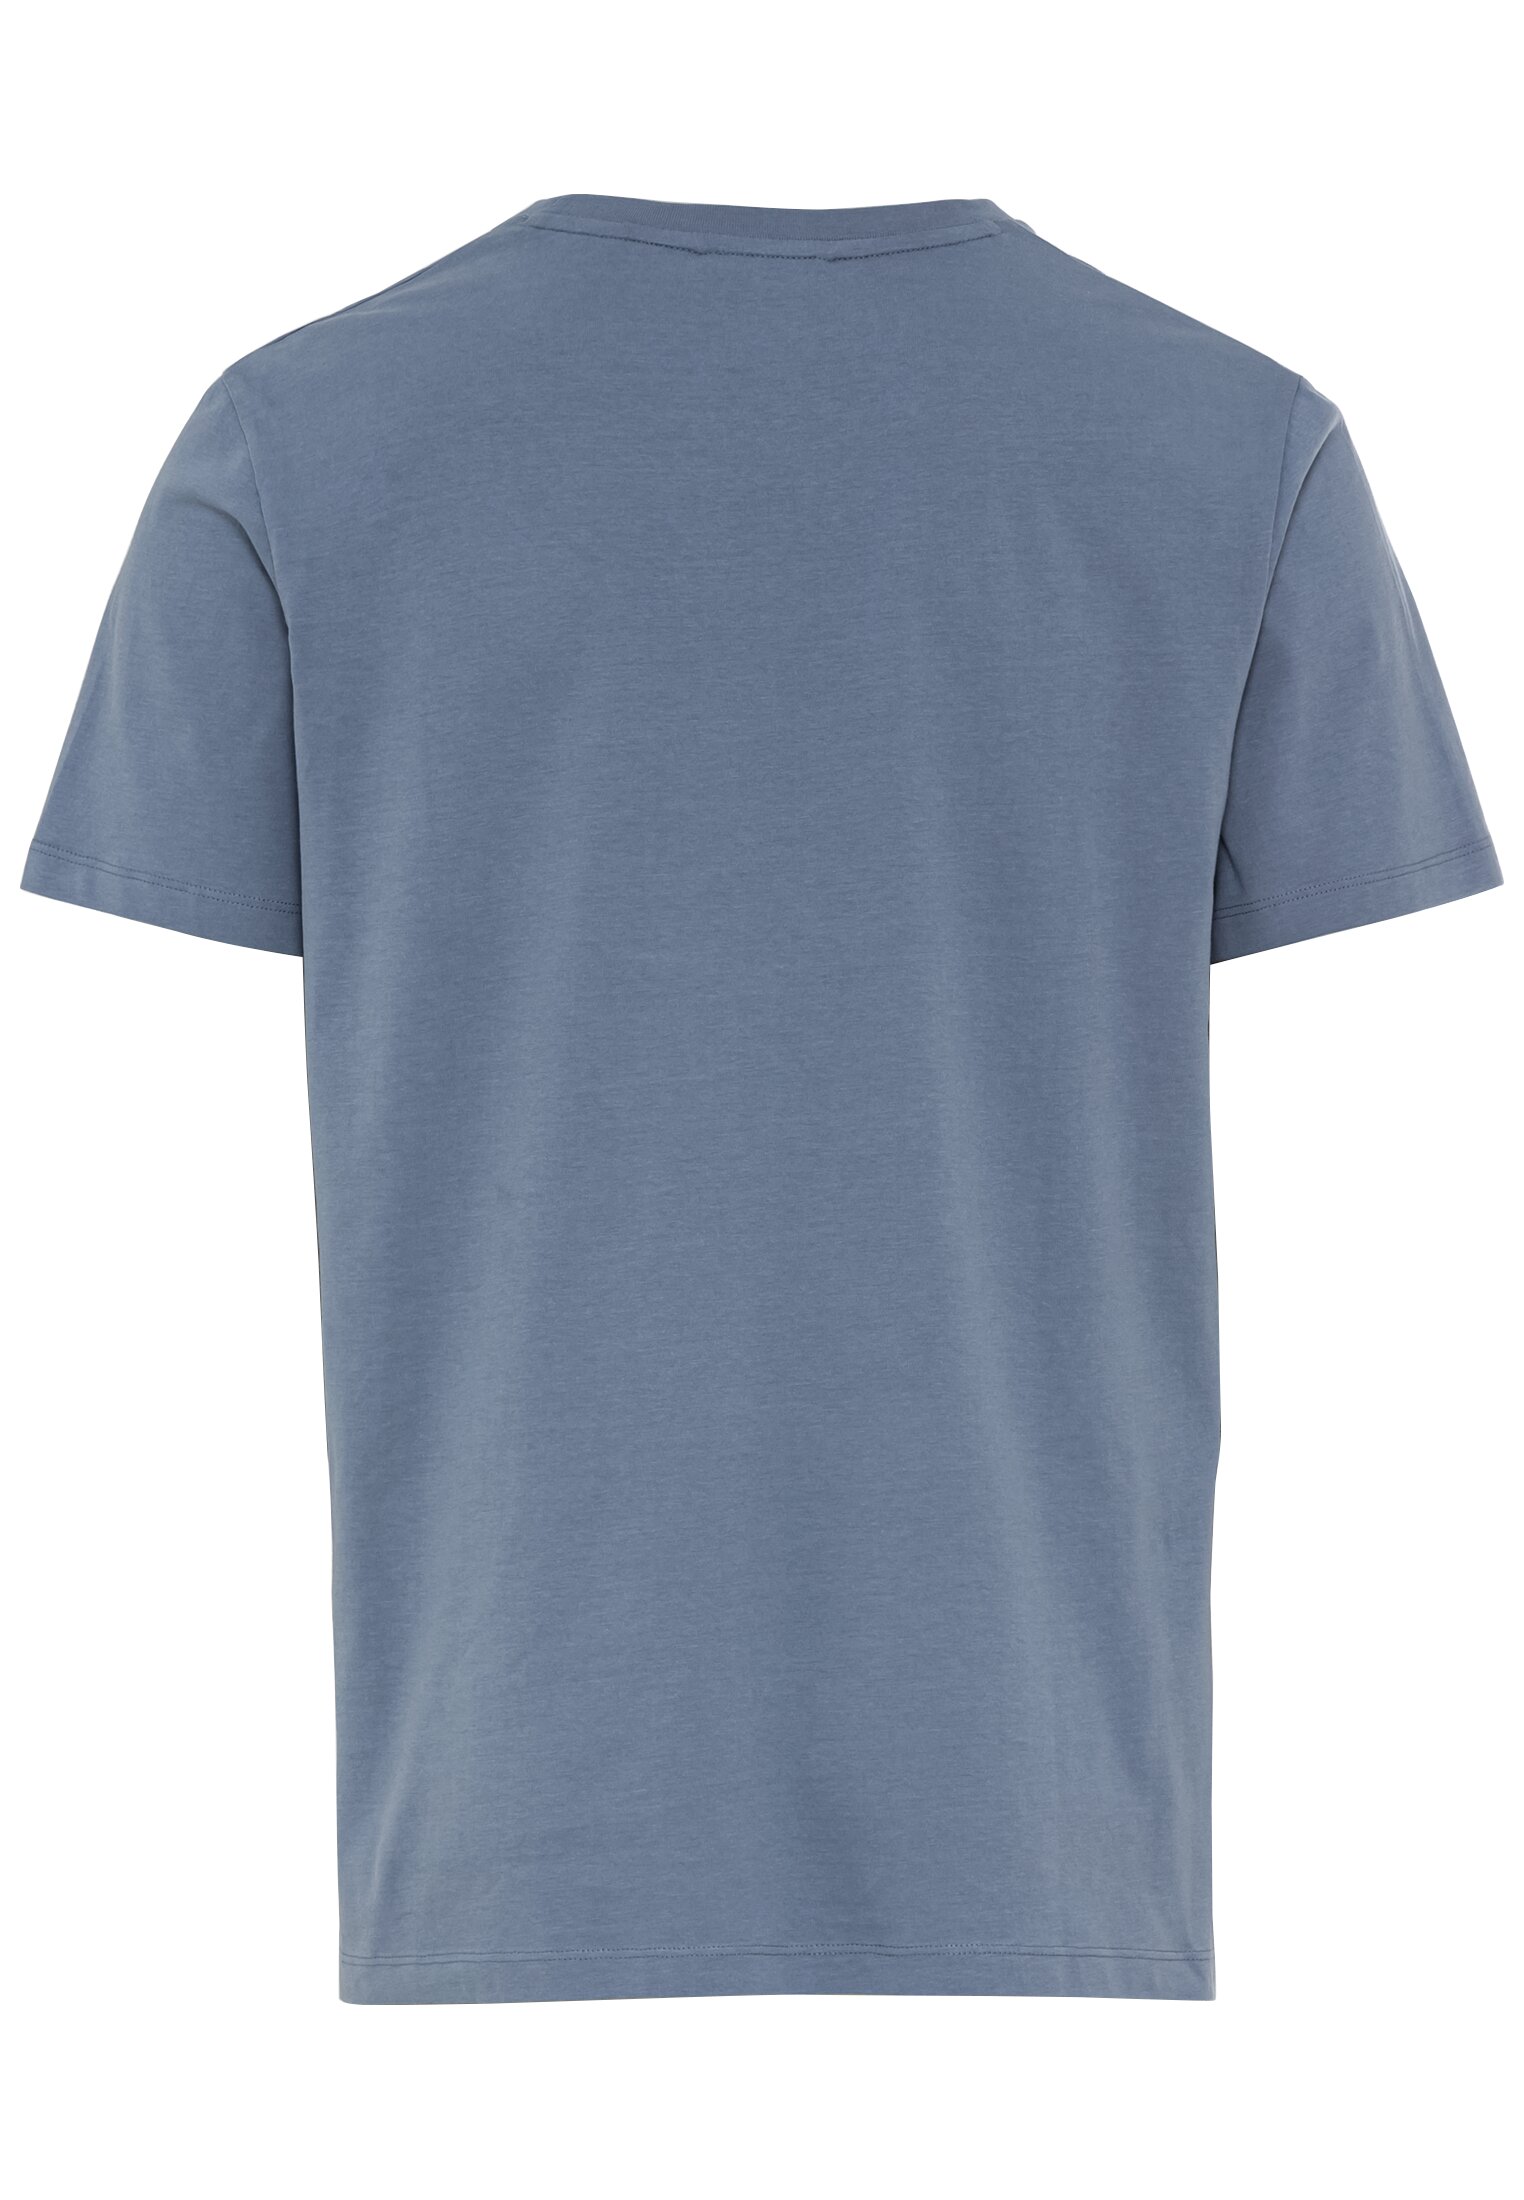 Мужская футболка Camel Active, голубая, цвет голубой, размер 46 - фото 3